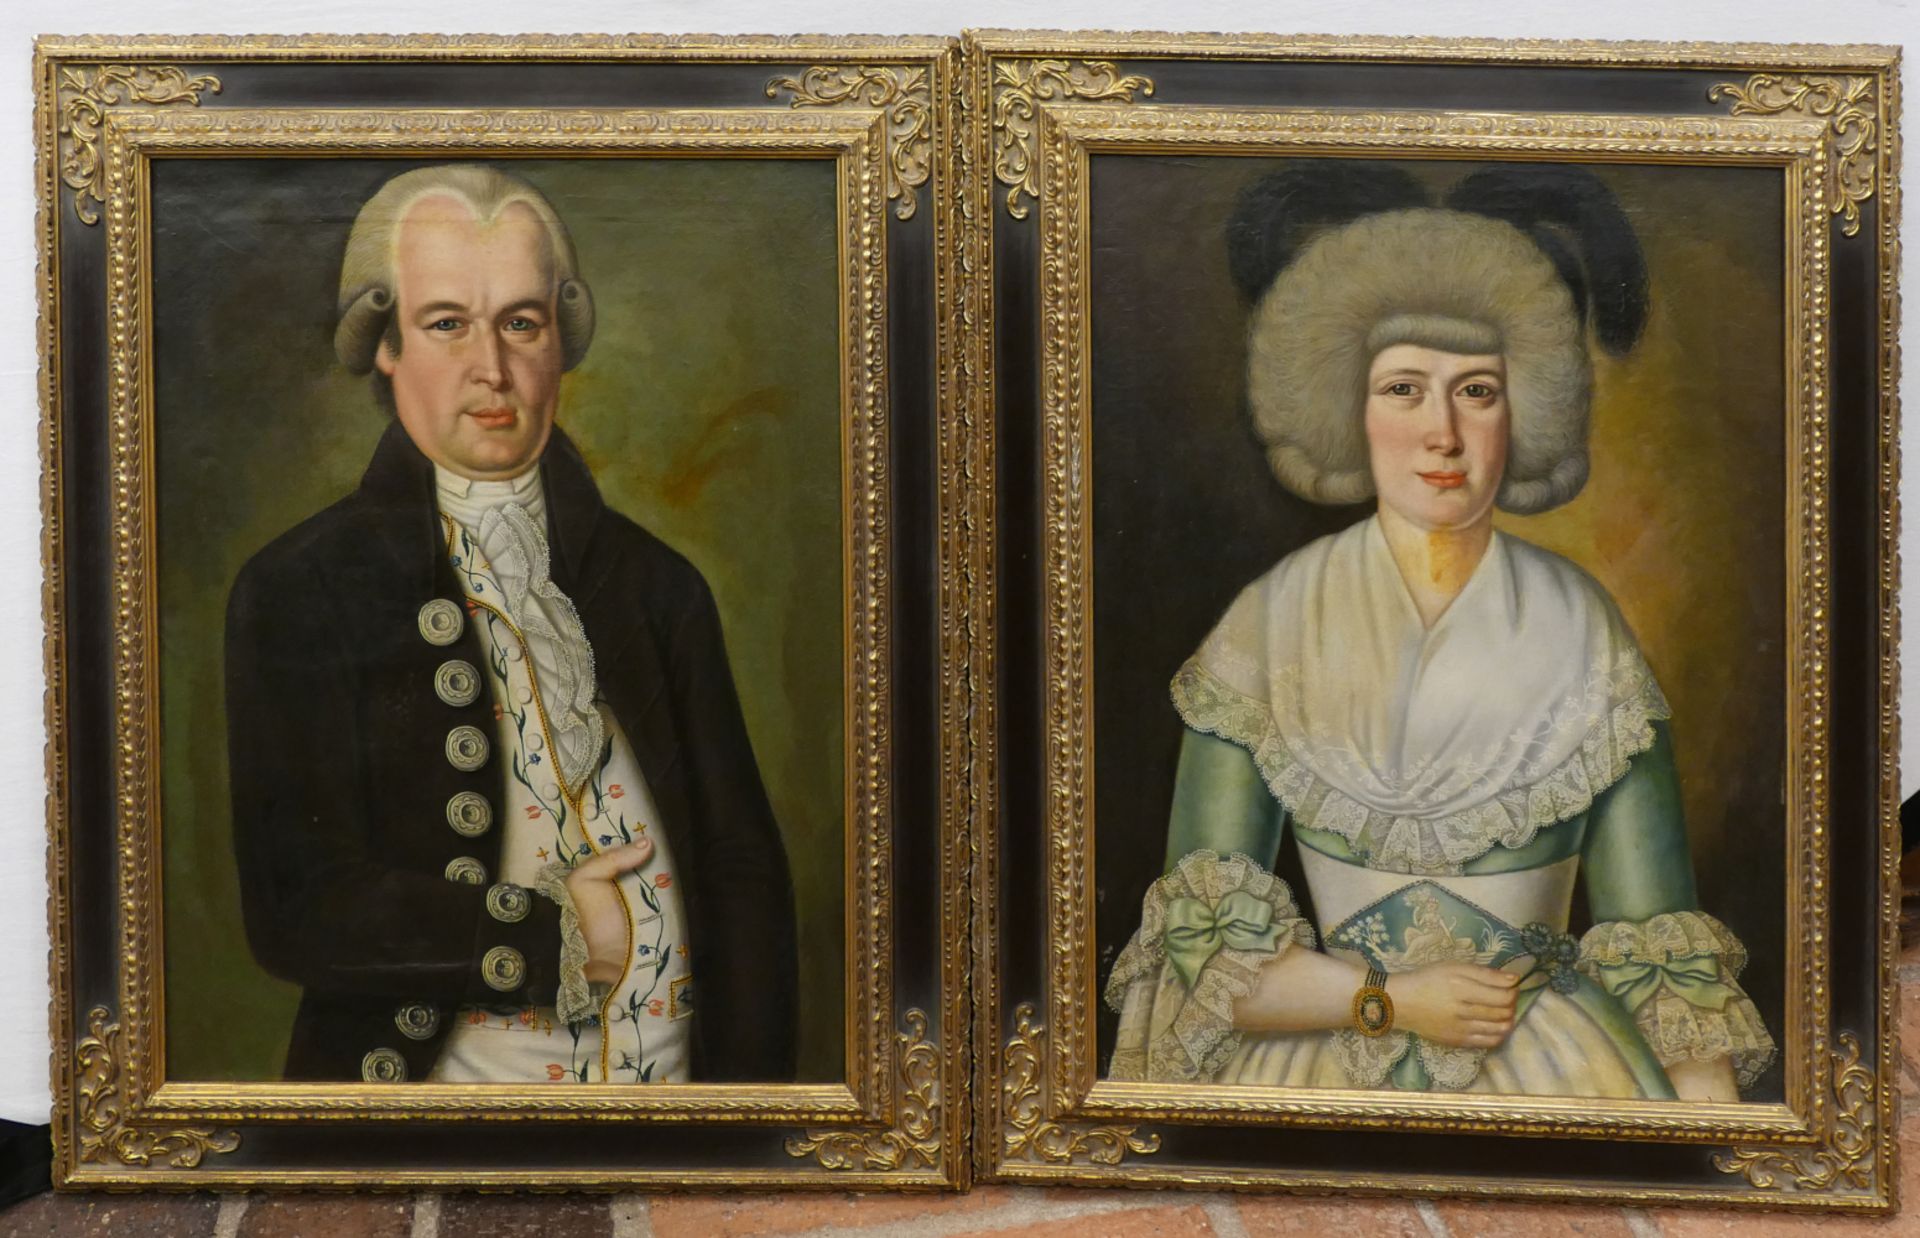 1 Pendant Eheportraits je unsign. (wohl 18. Jh.), gemalt anlässlich der Erhebung der Familie KIETER